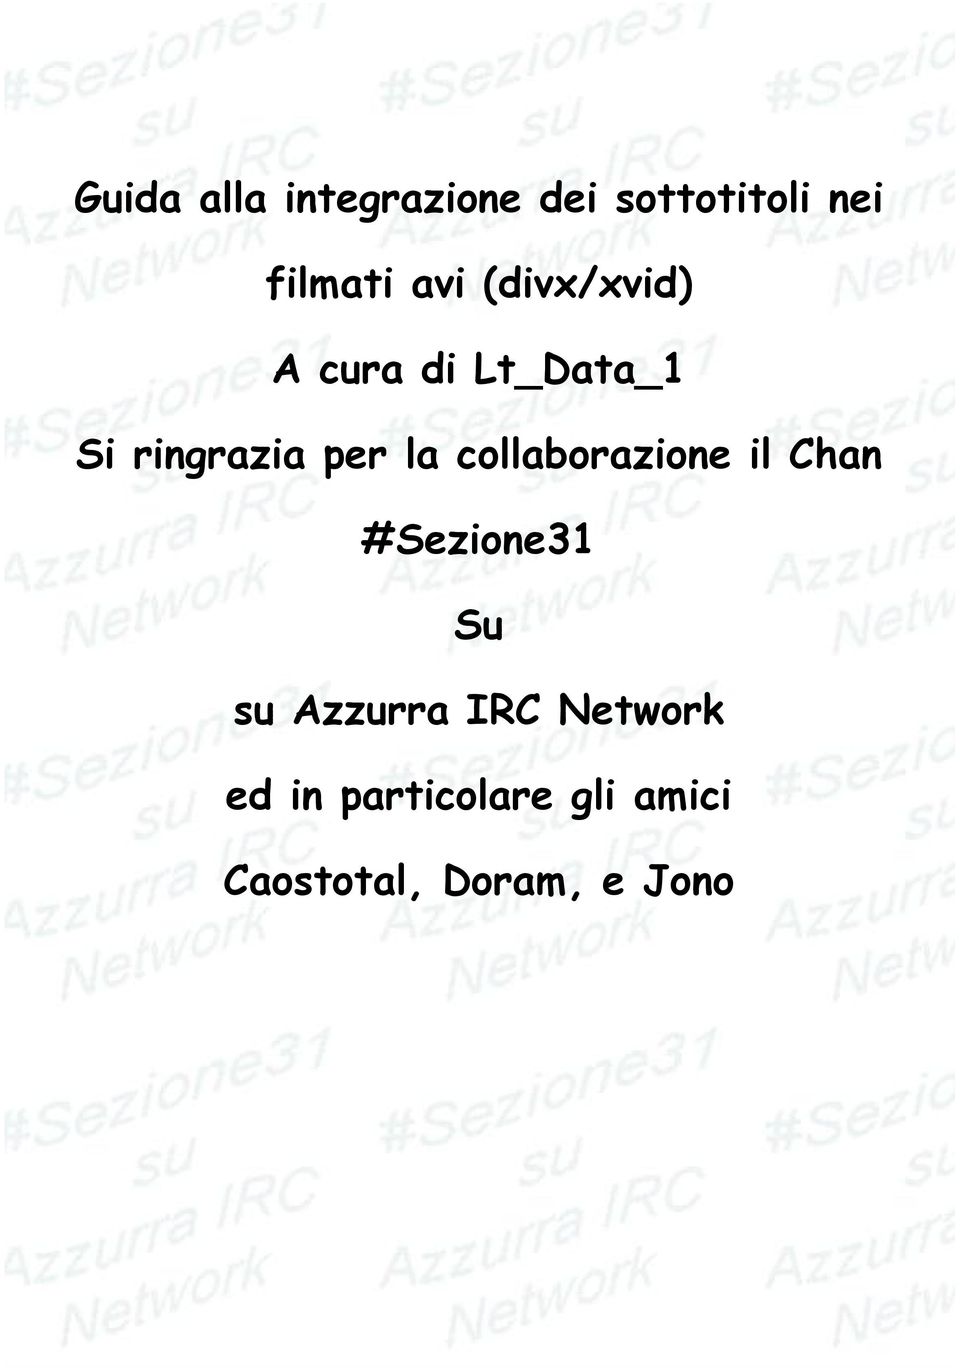 la collaborazione il Chan #Sezione31 Su su Azzurra IRC